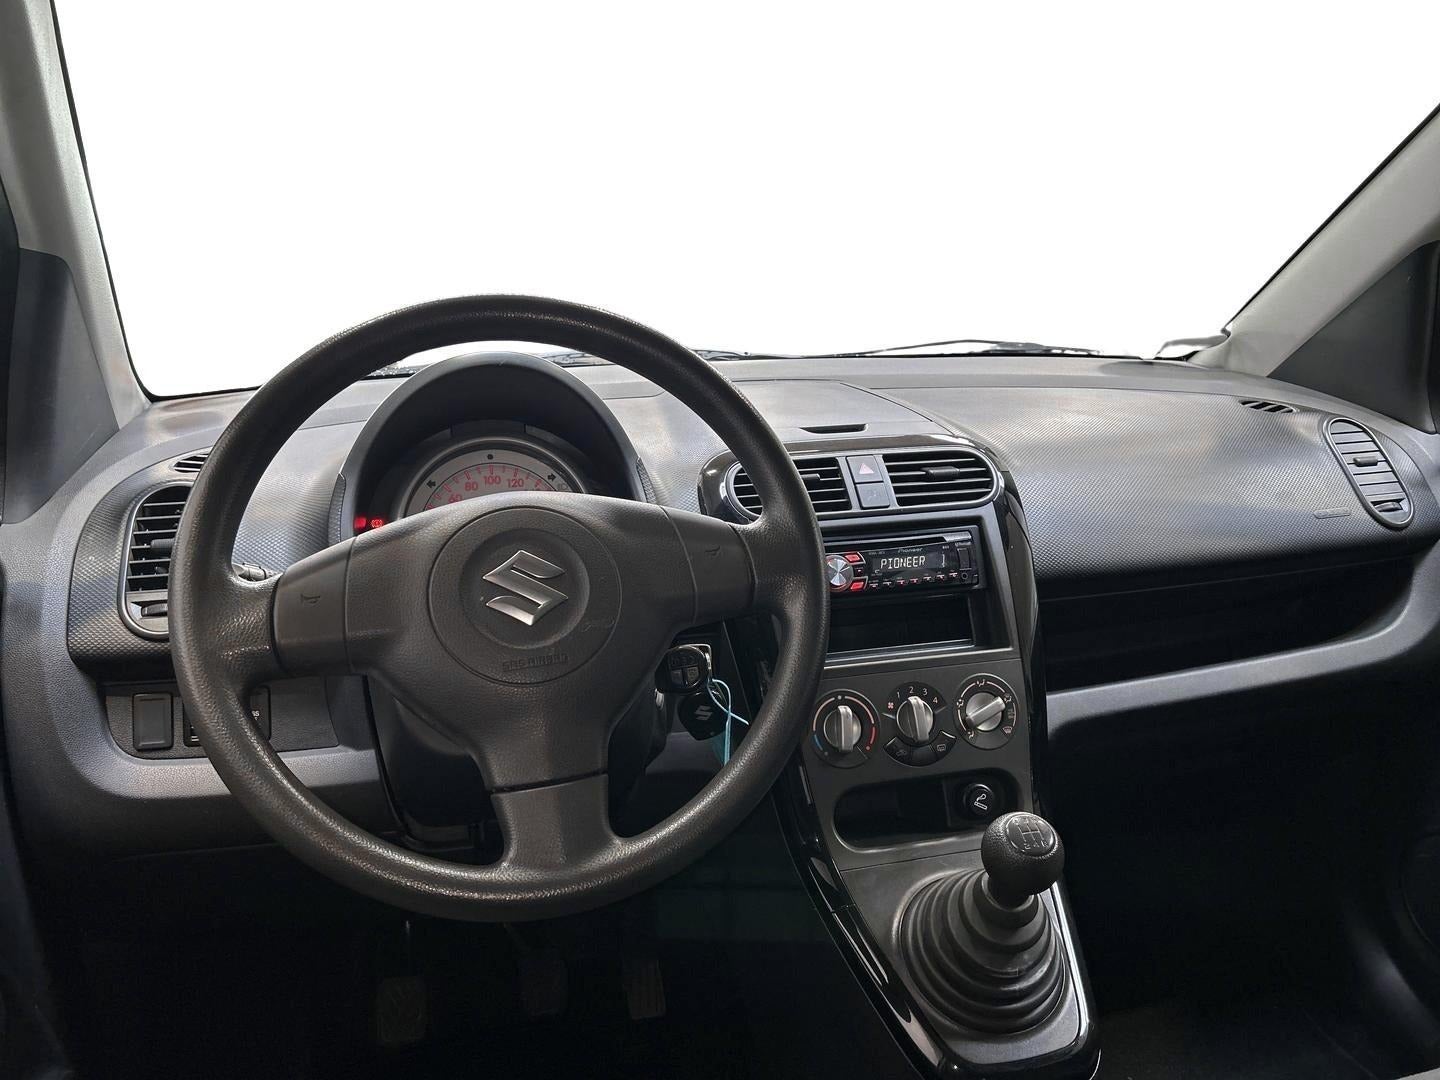 Suzuki Splash 1,0 GL Benzin modelår 2011 km 149000 Sort ABS